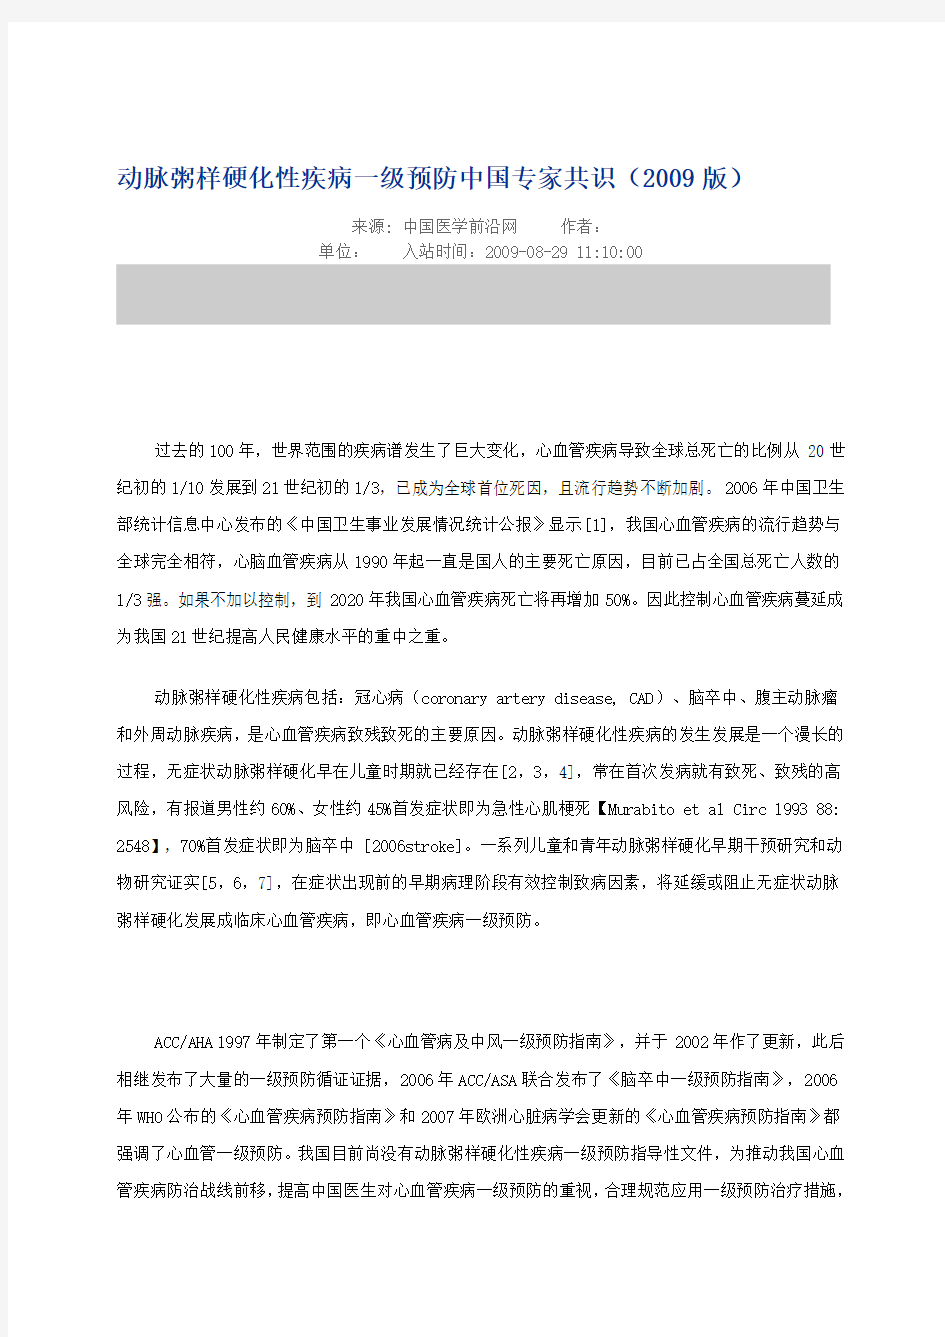 动脉粥样硬化性疾病一级预防中国专家共识(2009版)